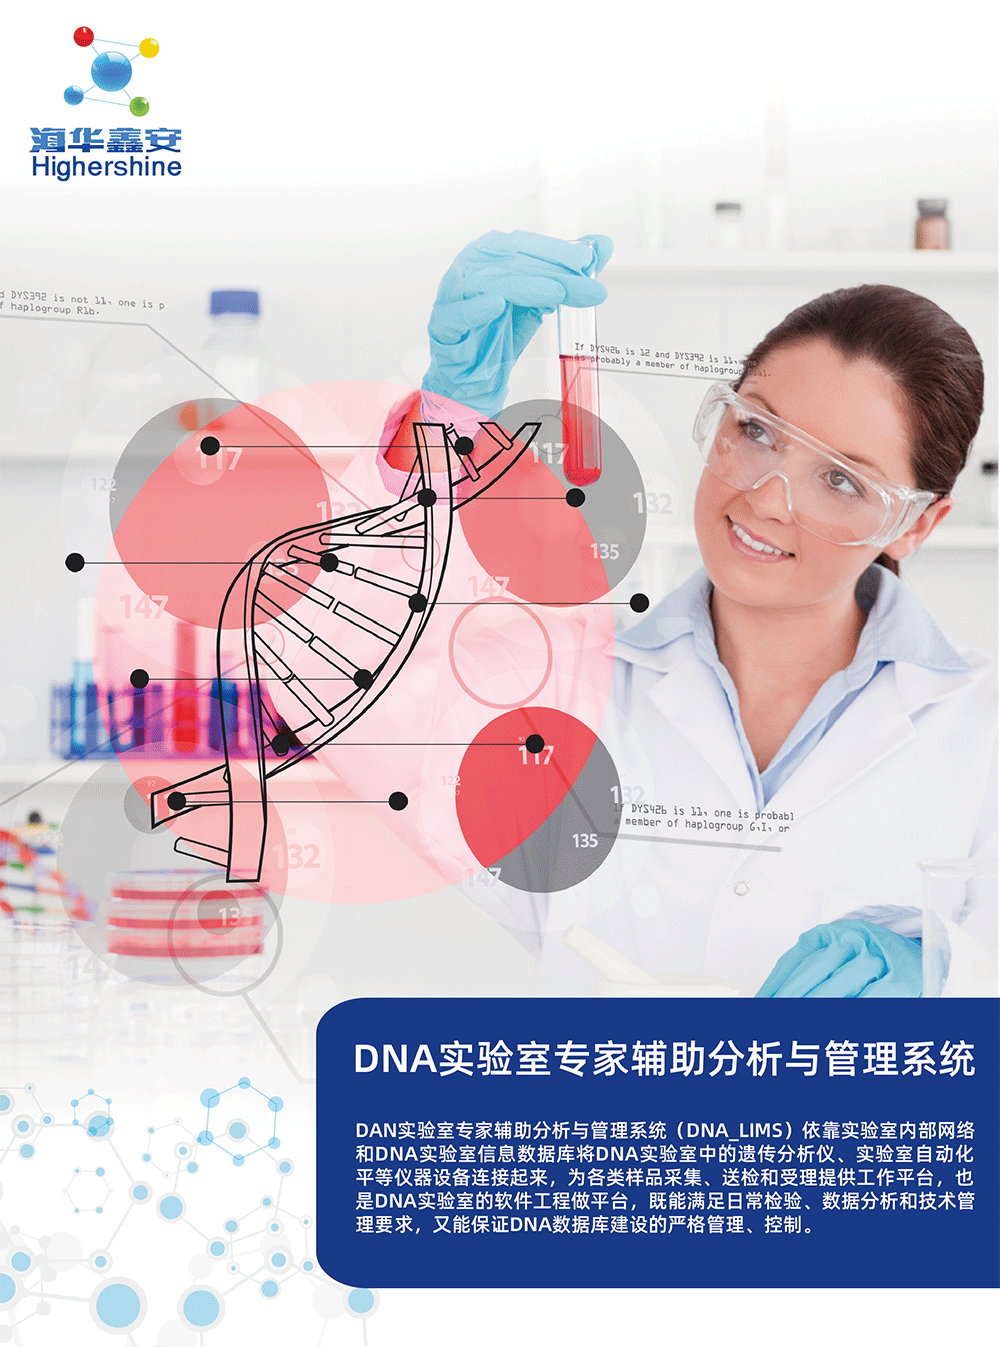 DNA实验室专家辅助分析与管理系统